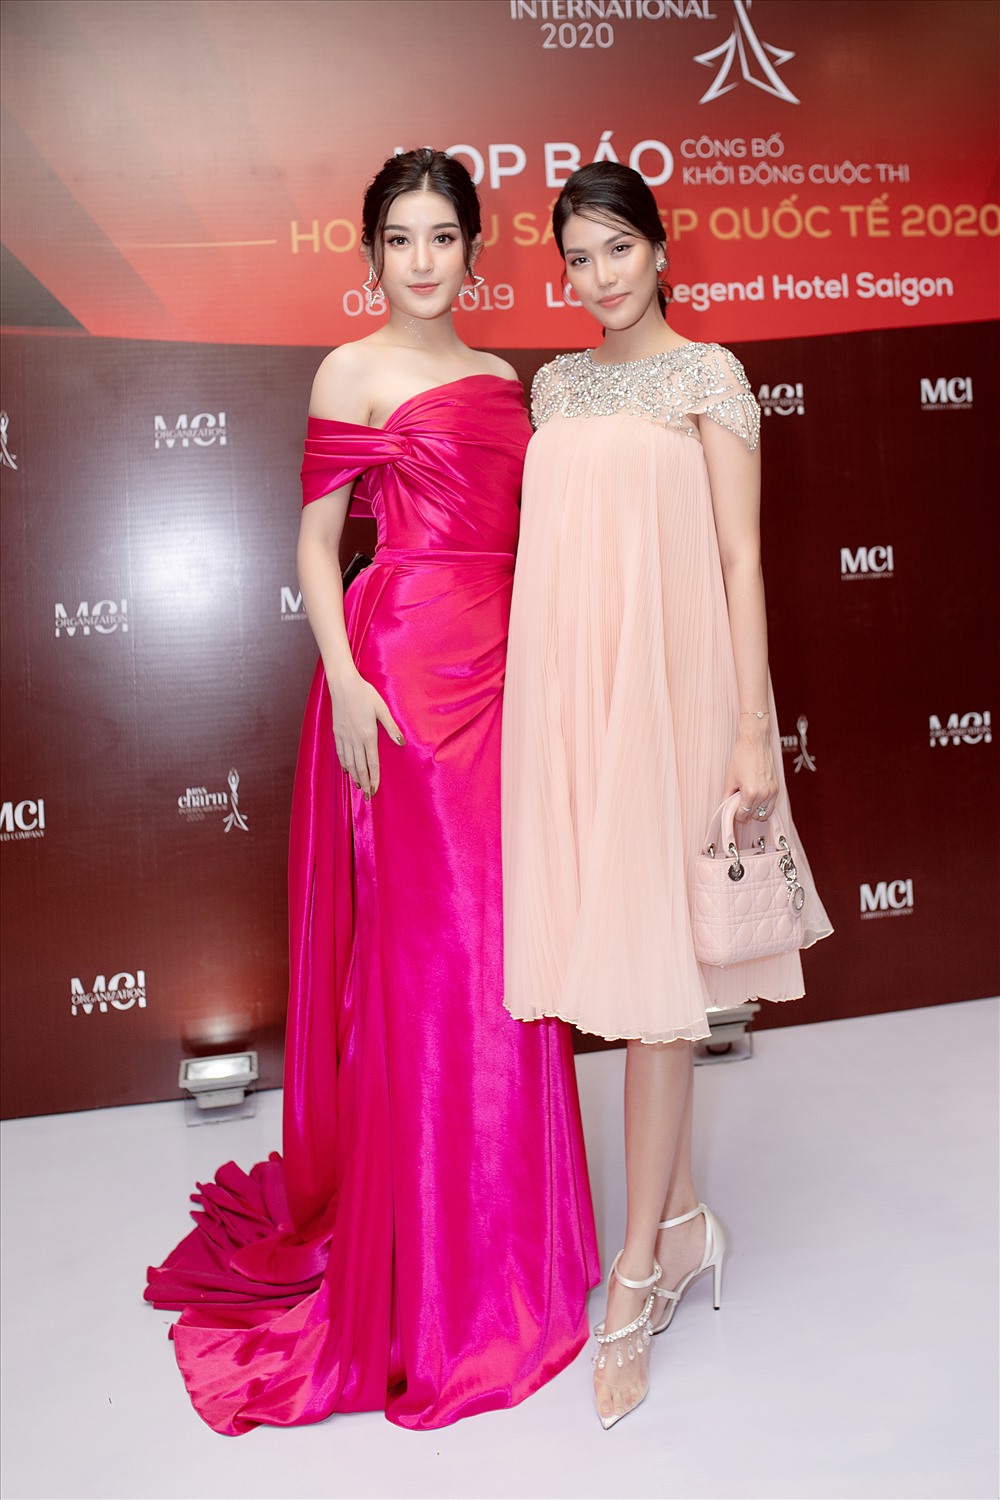 Á hậu Huyền My và siêu mẫu Lan Khuê sẽ là người “cầm cân nảy mực” cho cuộc thi “Miss Charm International 2020“. Ảnh: BTC.